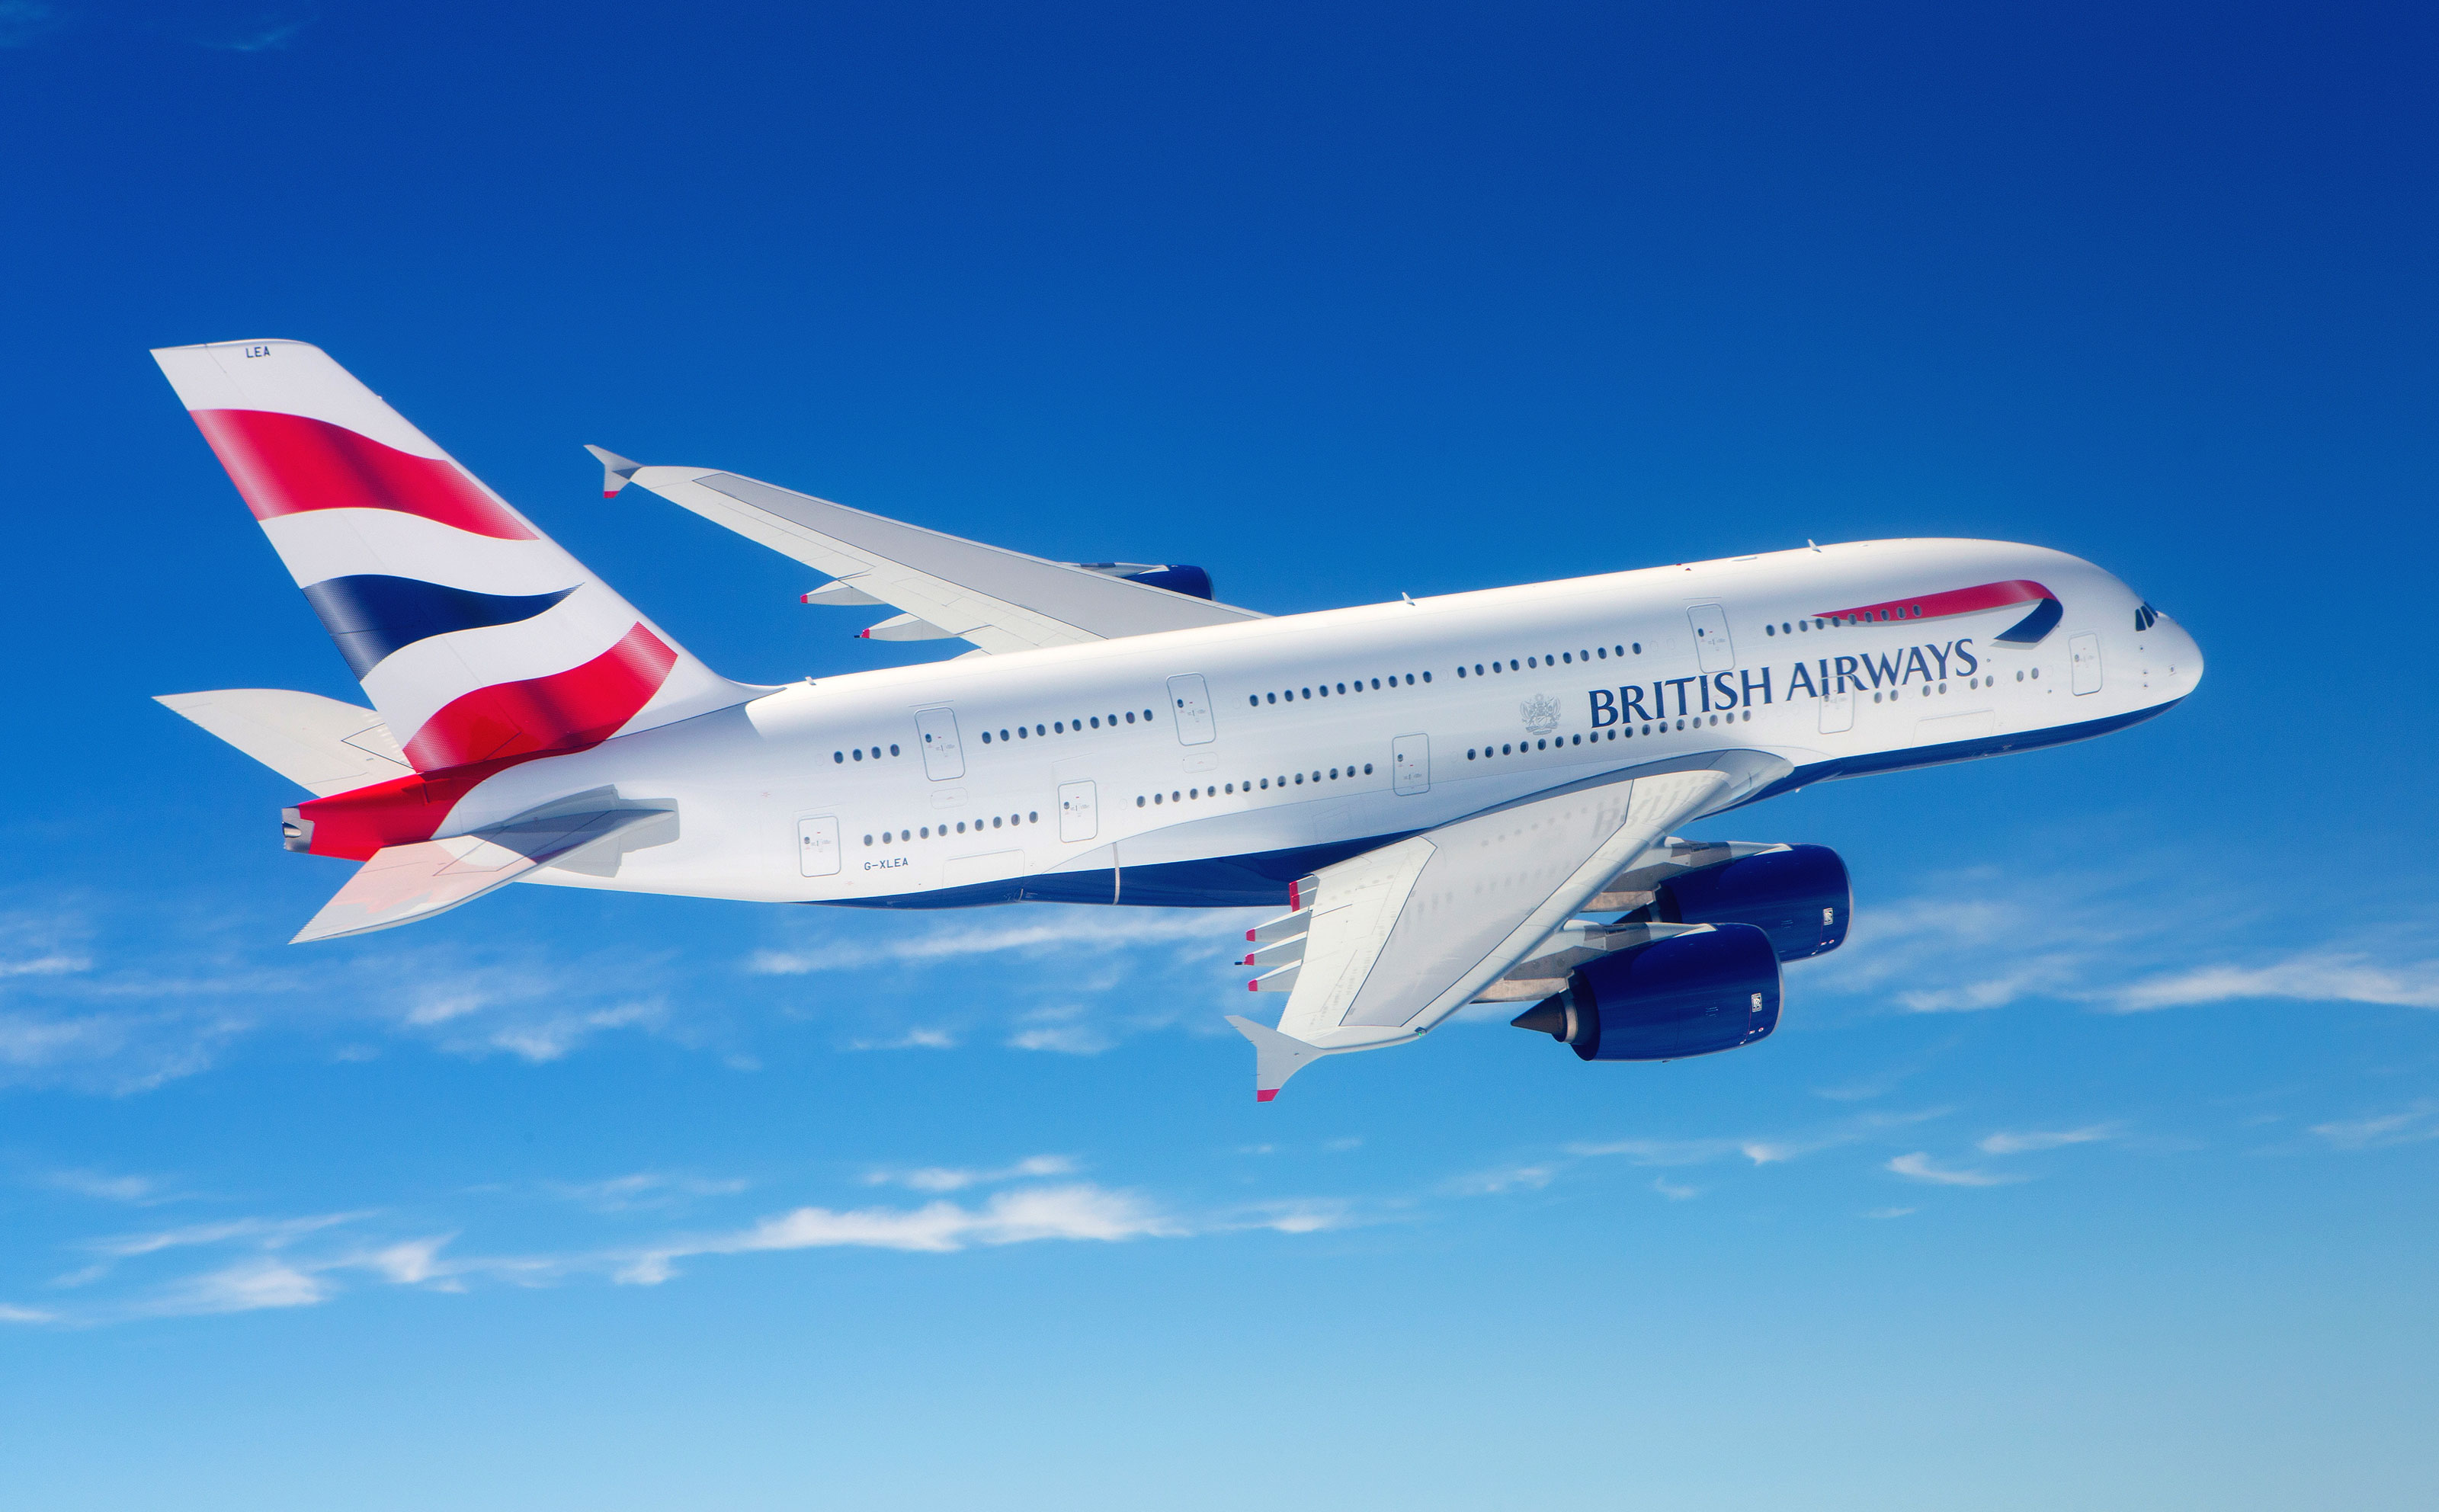 British Airways A380 Landing